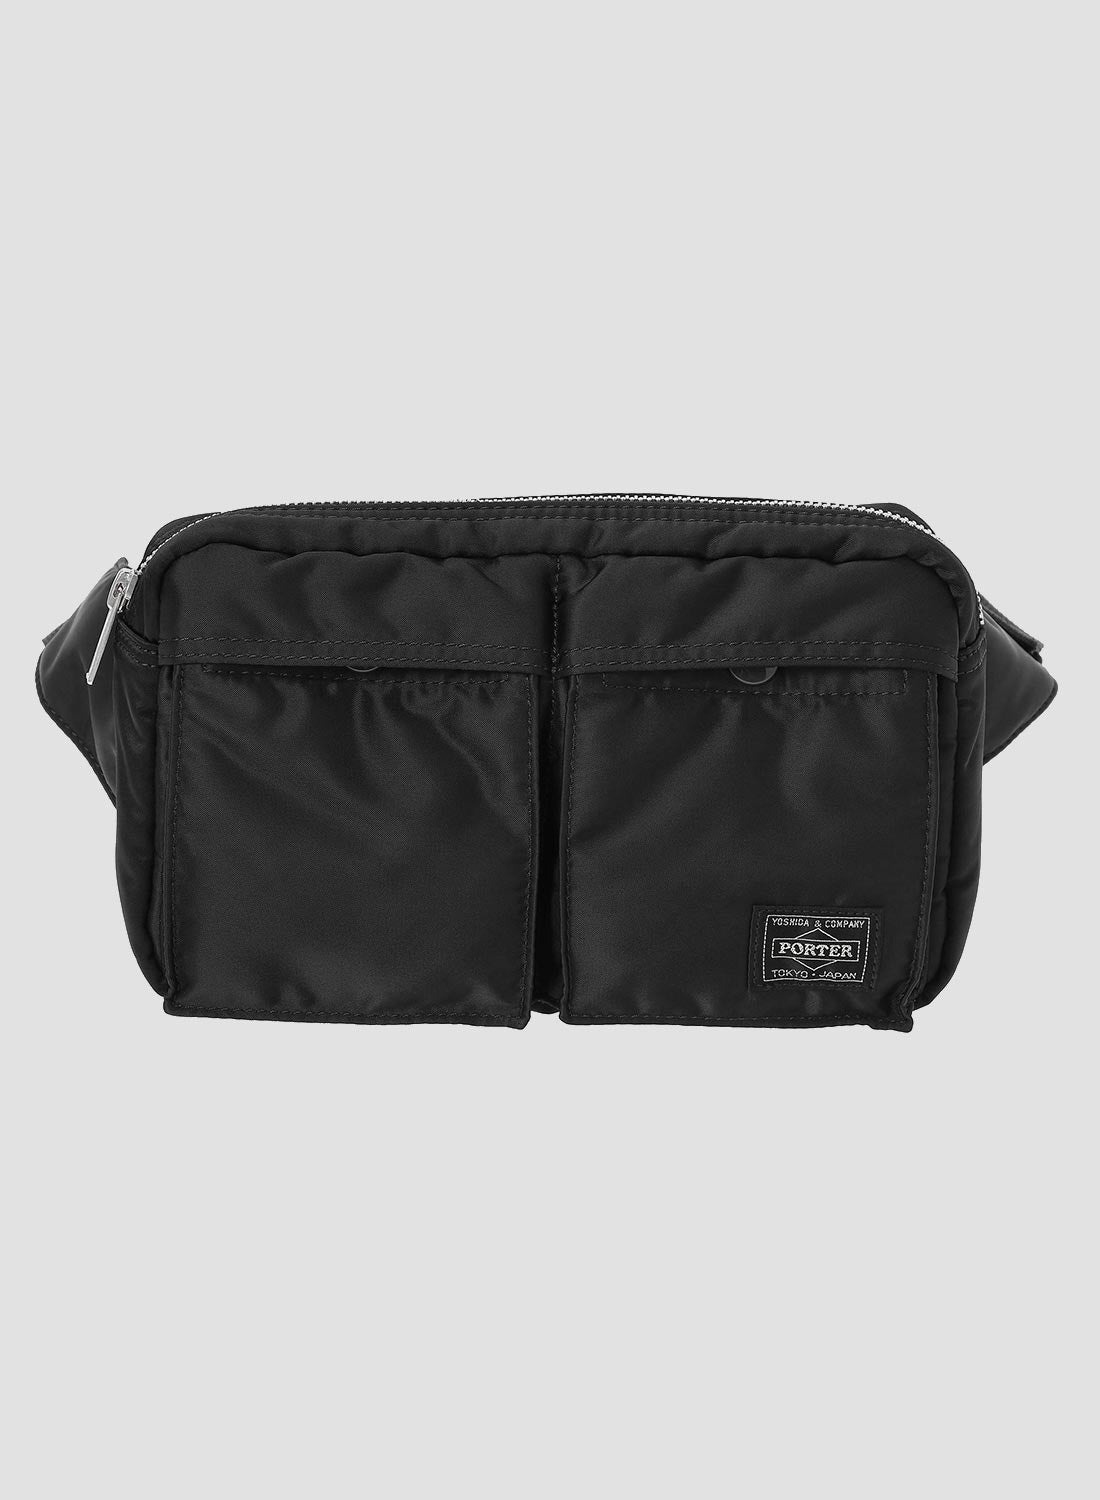 Porter-Yoshida & Co Tanker Waist Bag in Black - 1